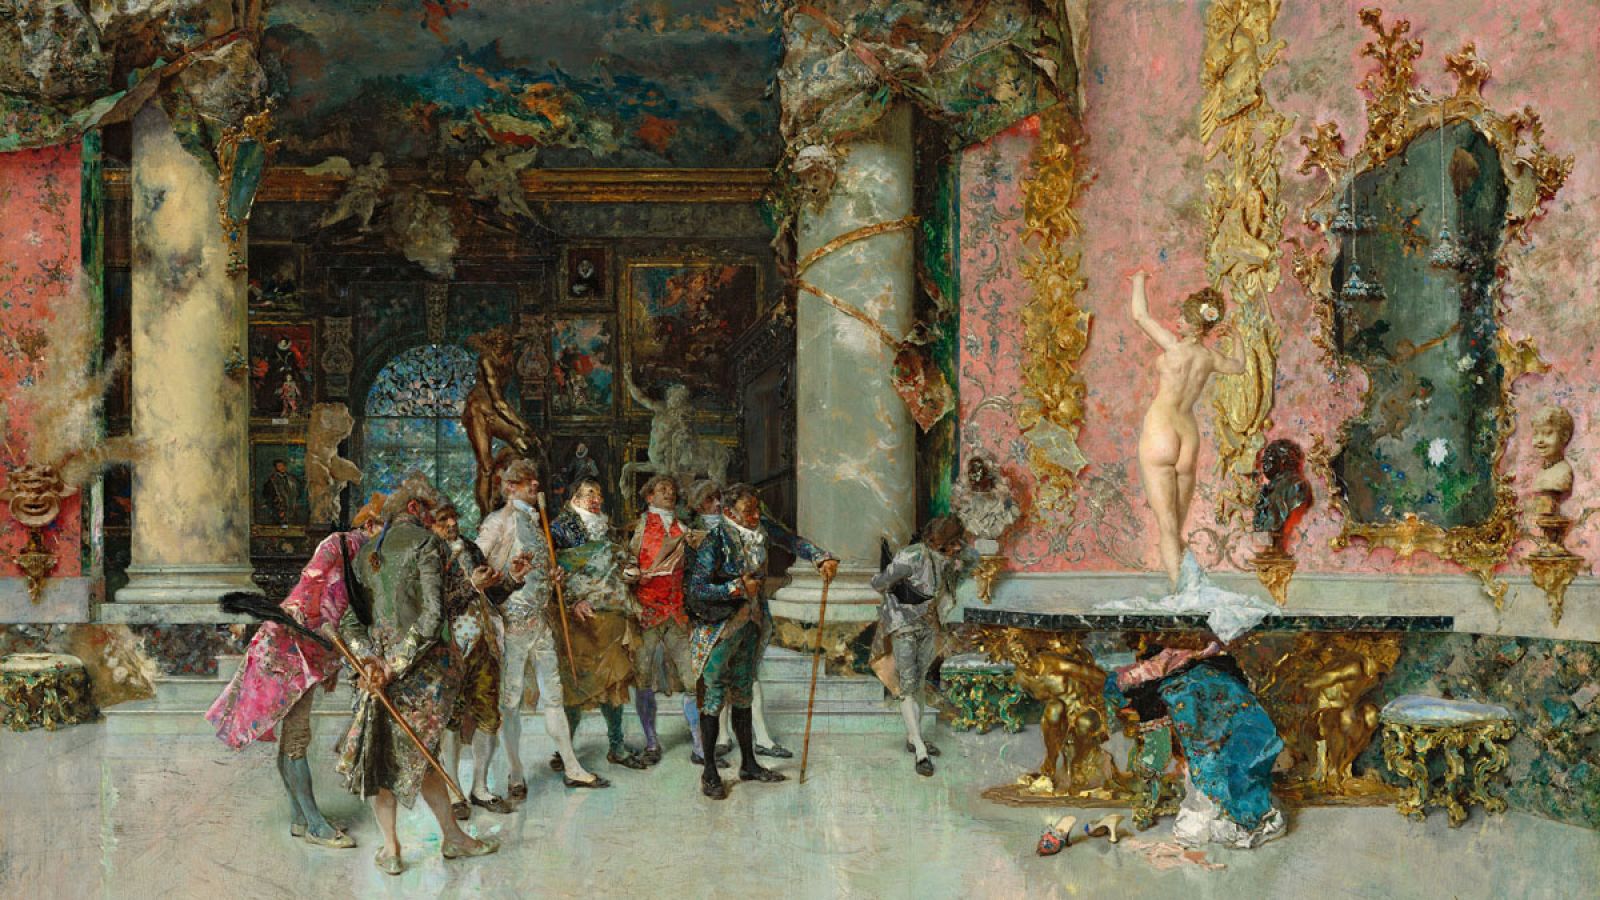 'La elección de la modelo'. Mariano Fortuny. Hacia 1868-1874 Washington, National Gallery of Art, Washington, Corcoran Collection.